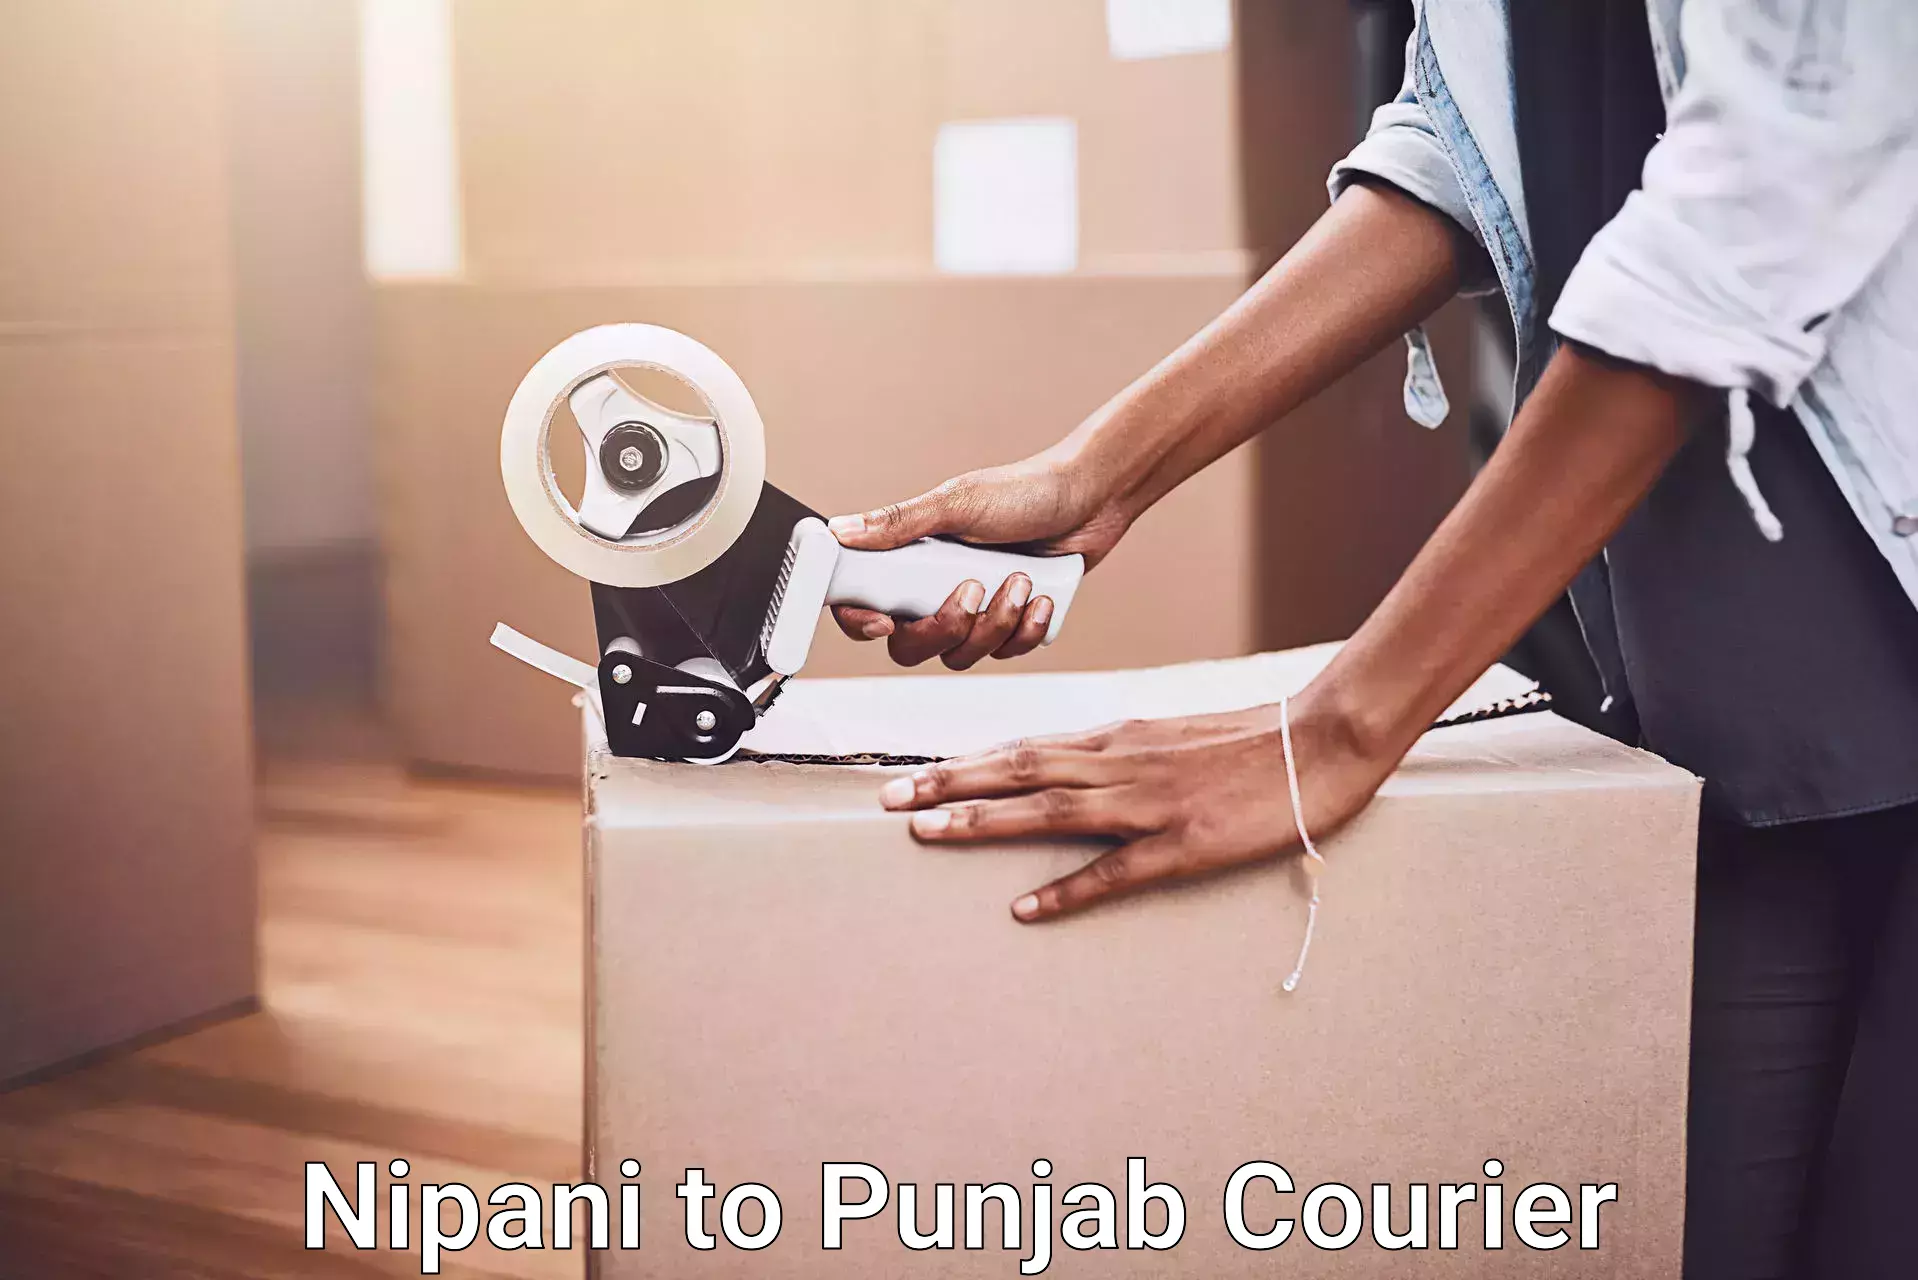 Furniture transport experts Nipani to Punjab